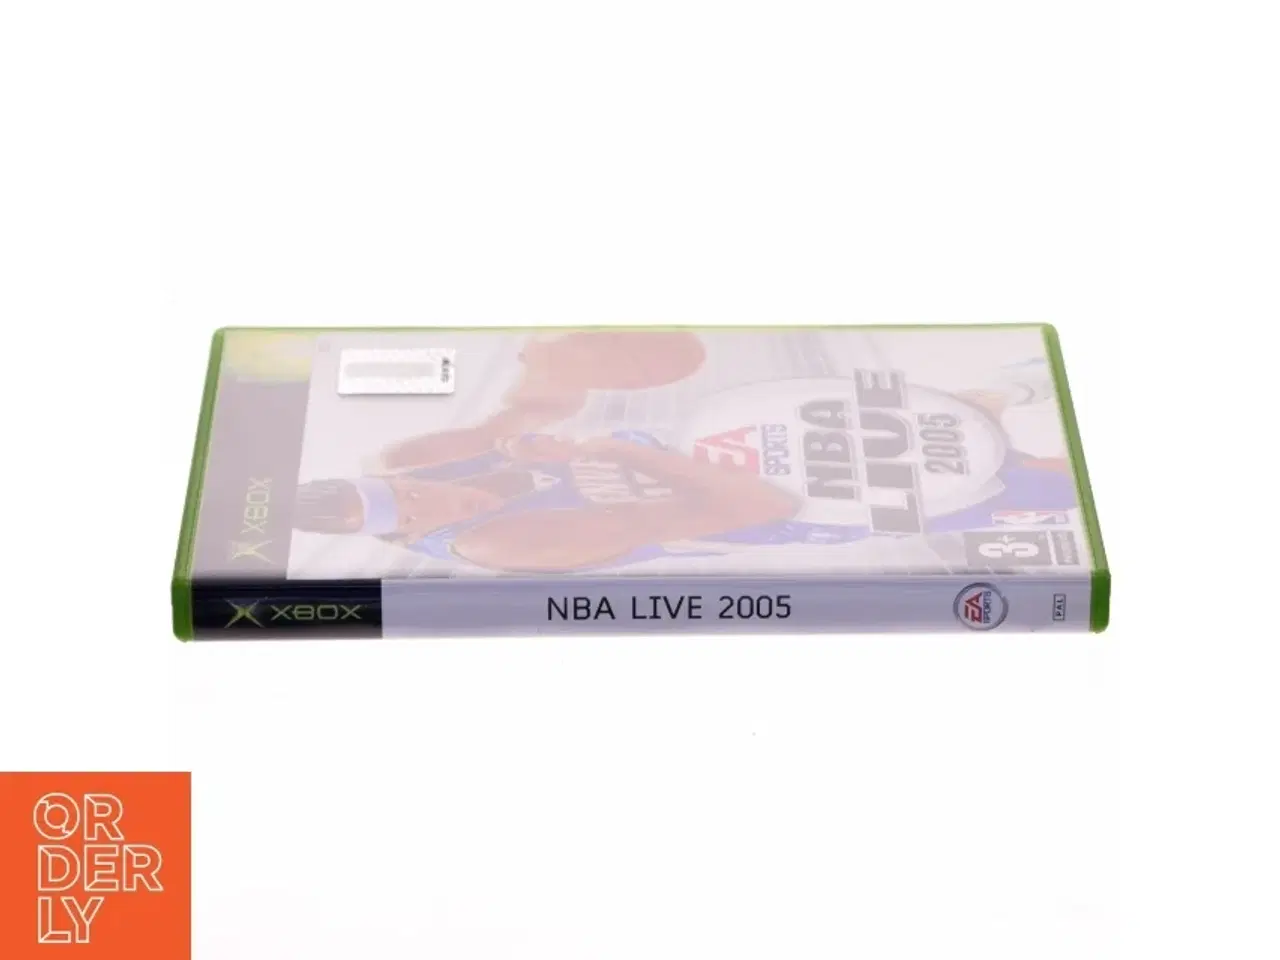 Billede 2 - NBA LIVE 2005 fra X box